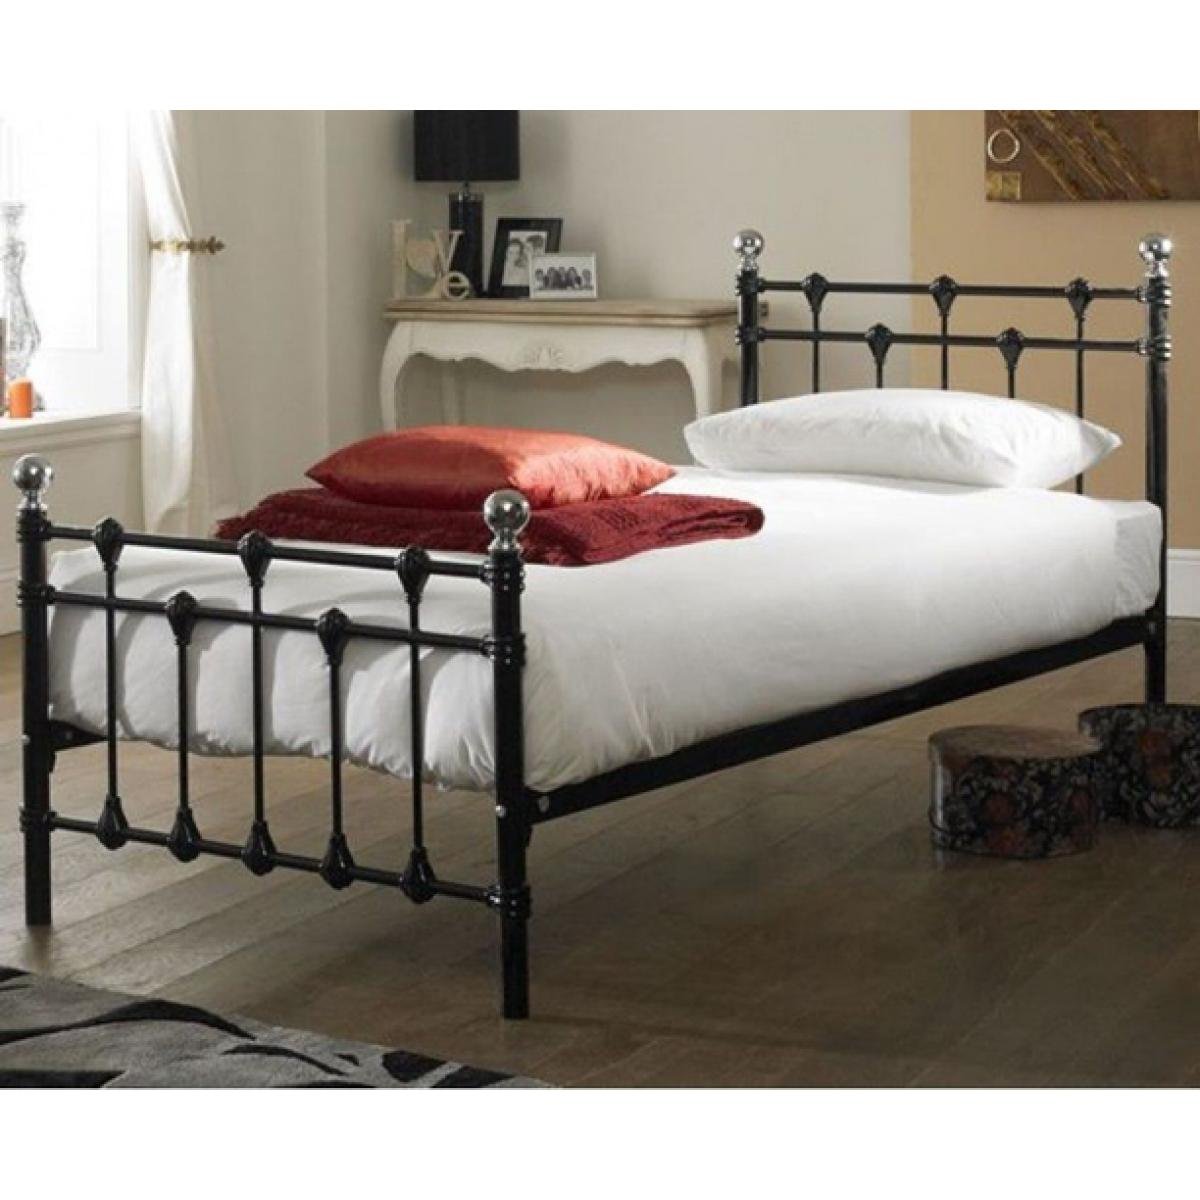 Металлическая кровать с матрасом купить. Арматек кровати железные. Кровать железная односпальная. Кровать из металла. Кровать кованная односпальная.